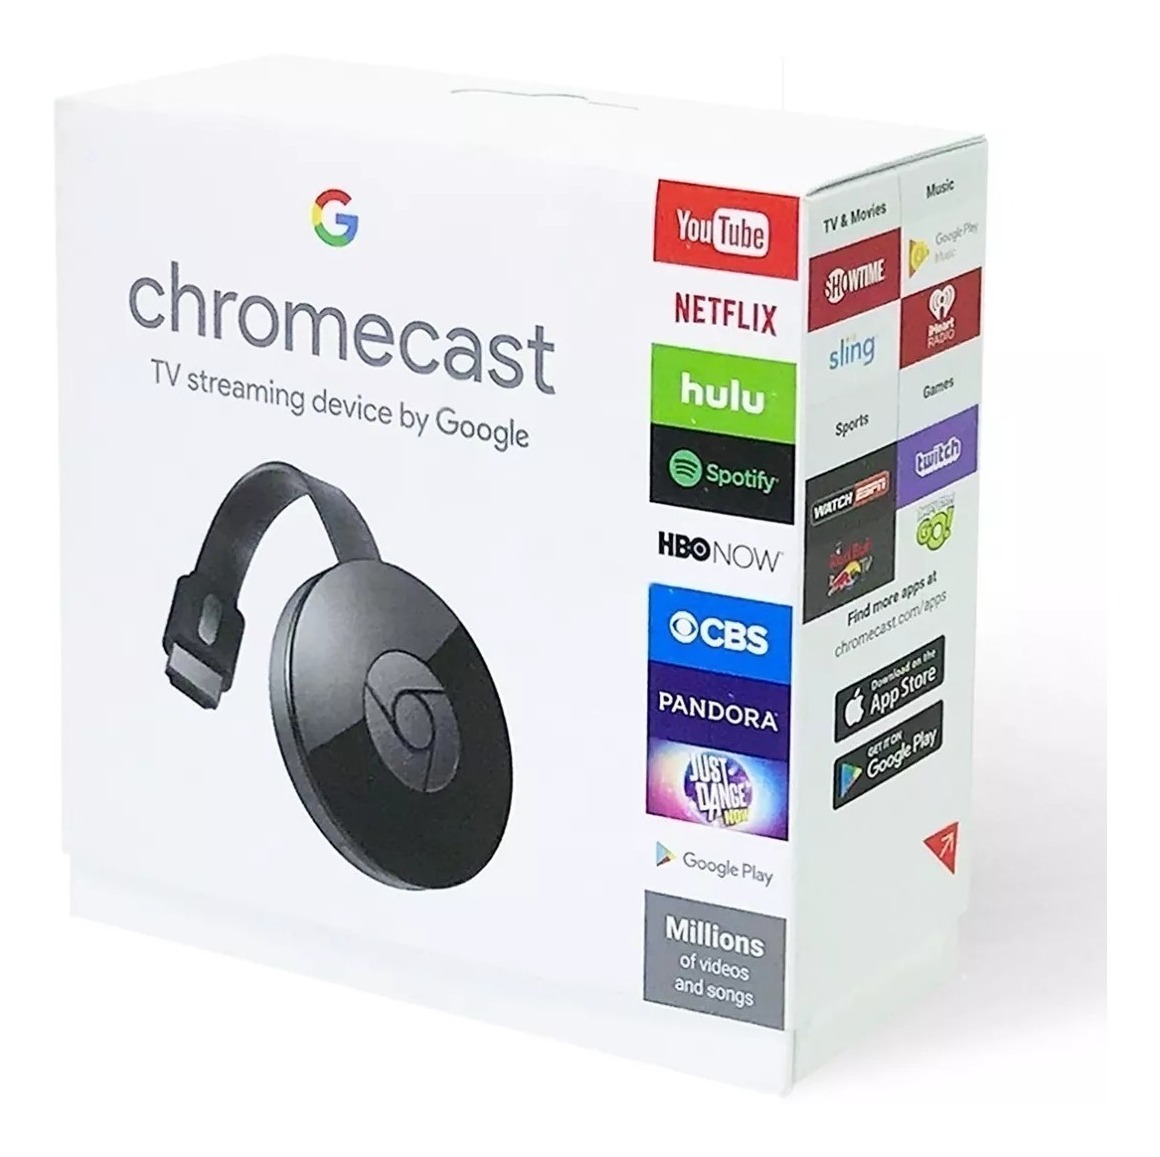 Google confirma que habrá una nueva versión de Chromecast